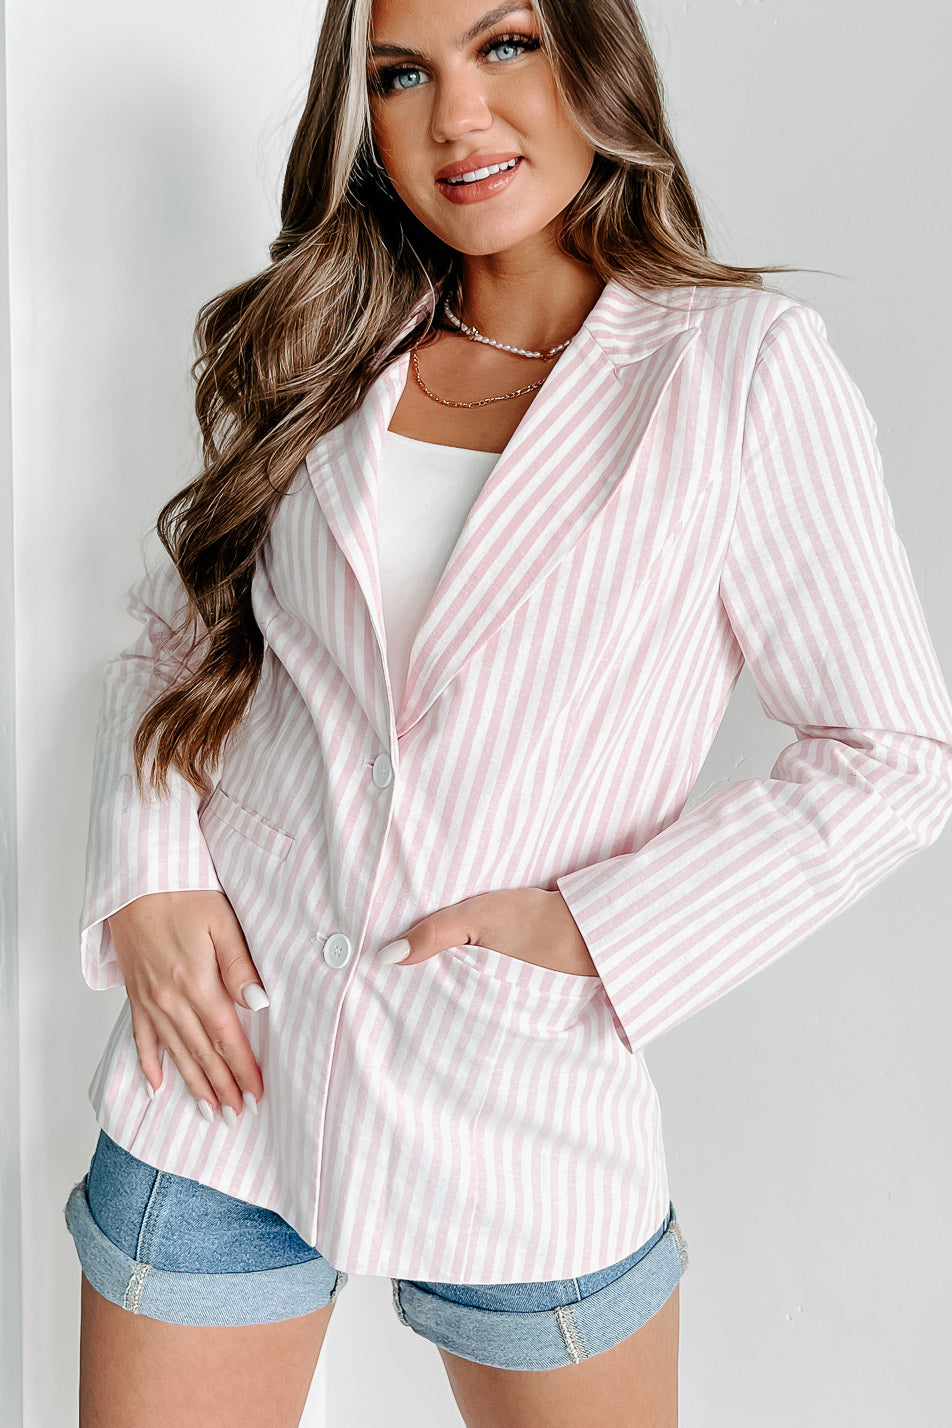 She Suits & Scores Striped Blazer (Pink) - NanaMacs